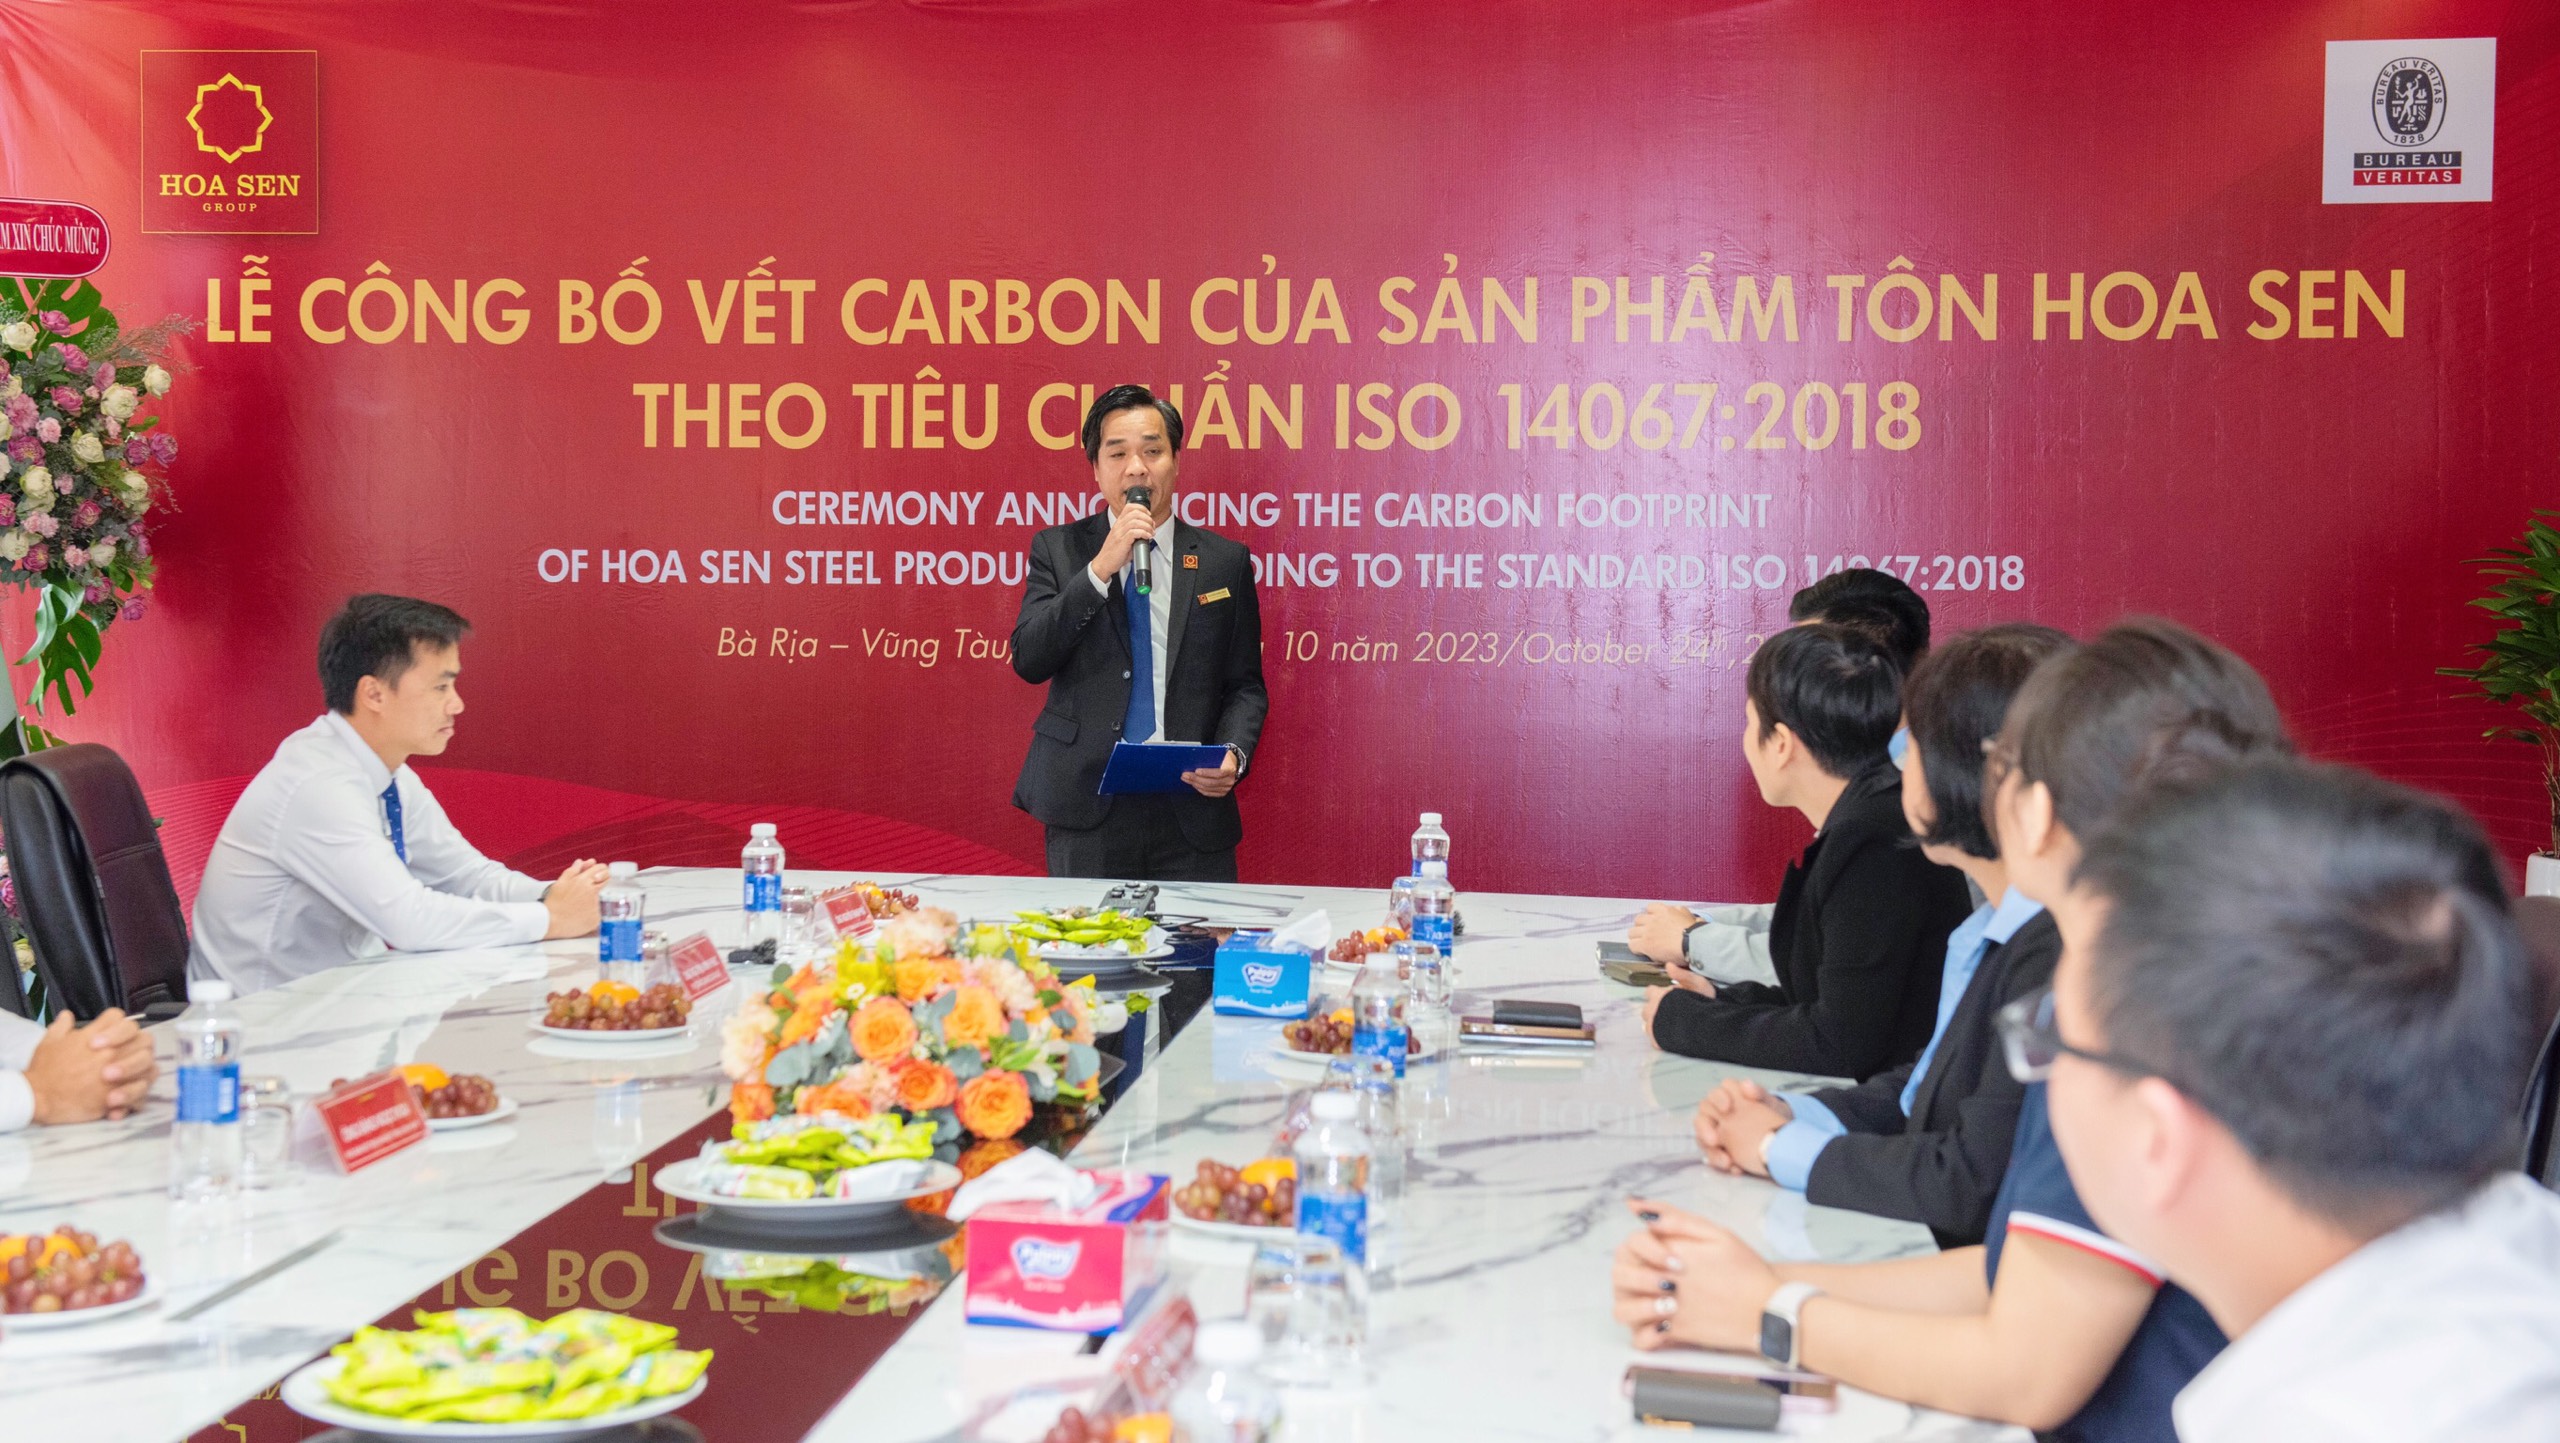 Ông Nguyễn Minh Phúc – Phó Tổng Giám đốc phụ trách Sản xuất Tập đoàn Hoa Sen phát biểu về định hướng mục tiêu và tổng kết quá trình triển khai truy vết carbon của sản phẩm Tôn Hoa Sen